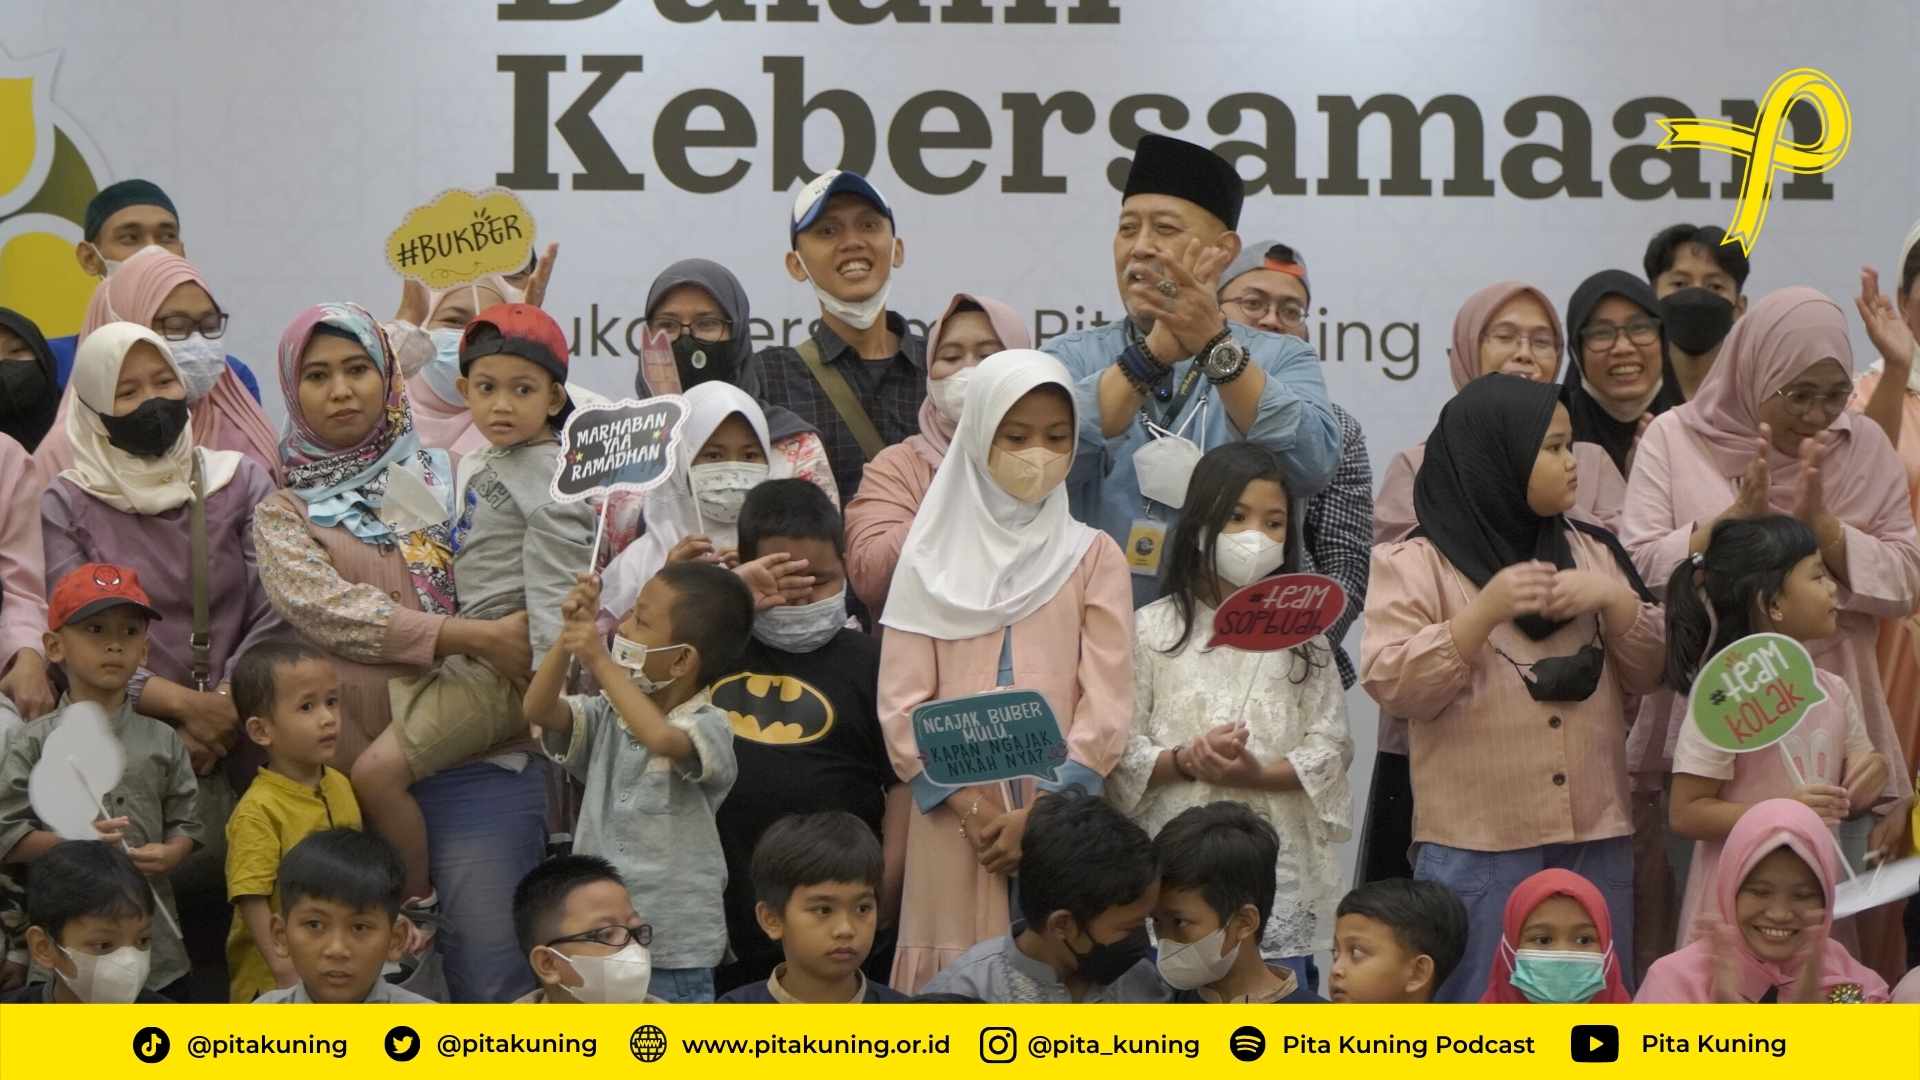 Buka Puasa Bersama Pita Kuning Jakarta Keberkahan dalam Kebersamaan